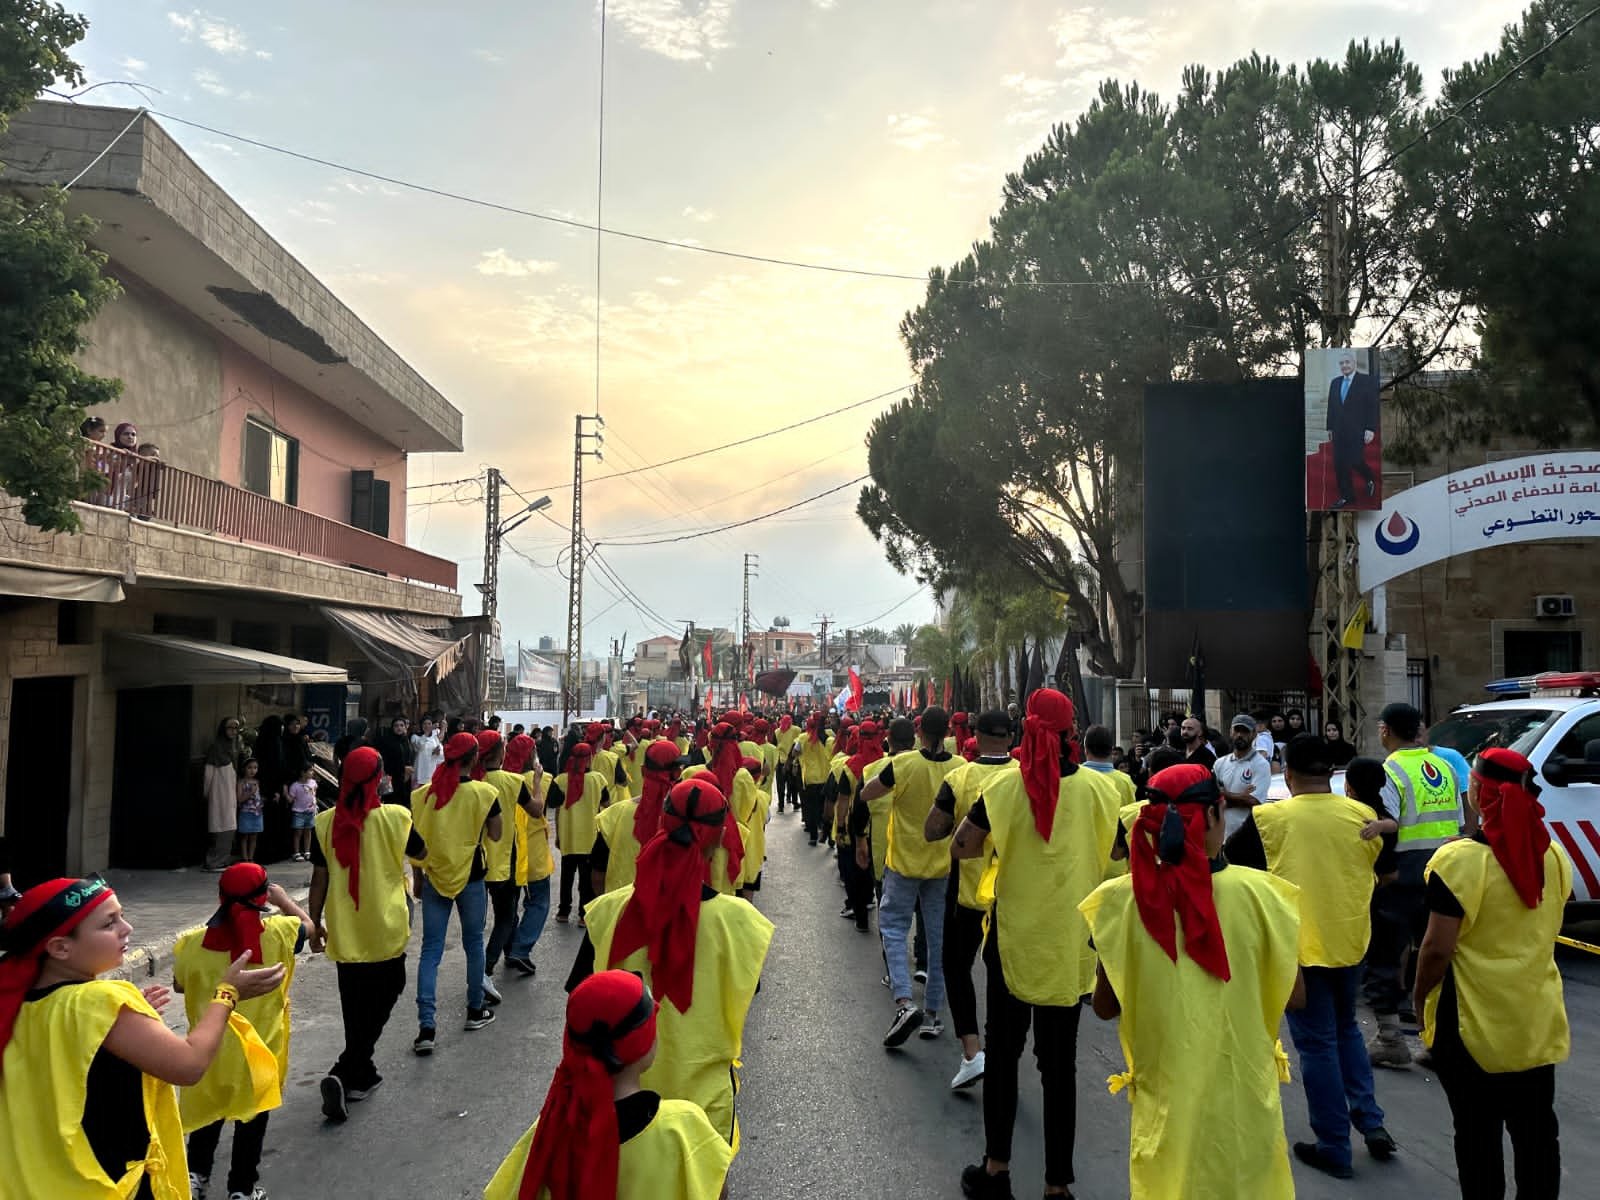 عاشوراء جنوب لبنان _ بالصور مسيرة عاشورائية حاشدة في بلدة شحور الجنوبية 